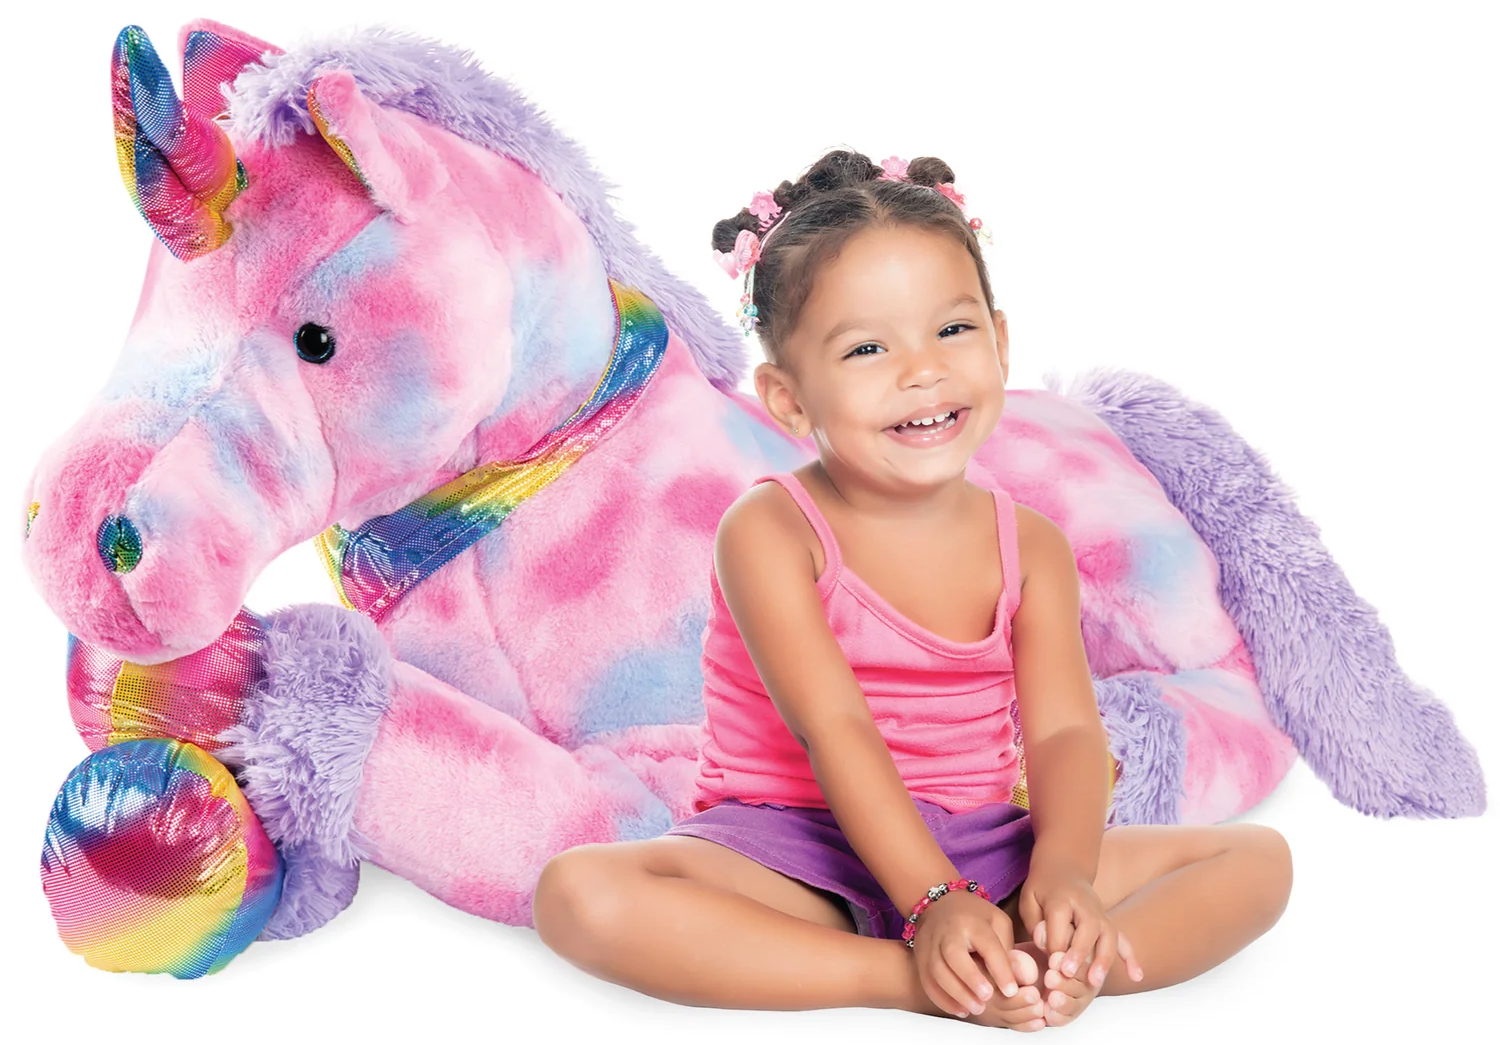 Extra Large Life-Size Plush Rainbow Unicorn Stuffed Animal